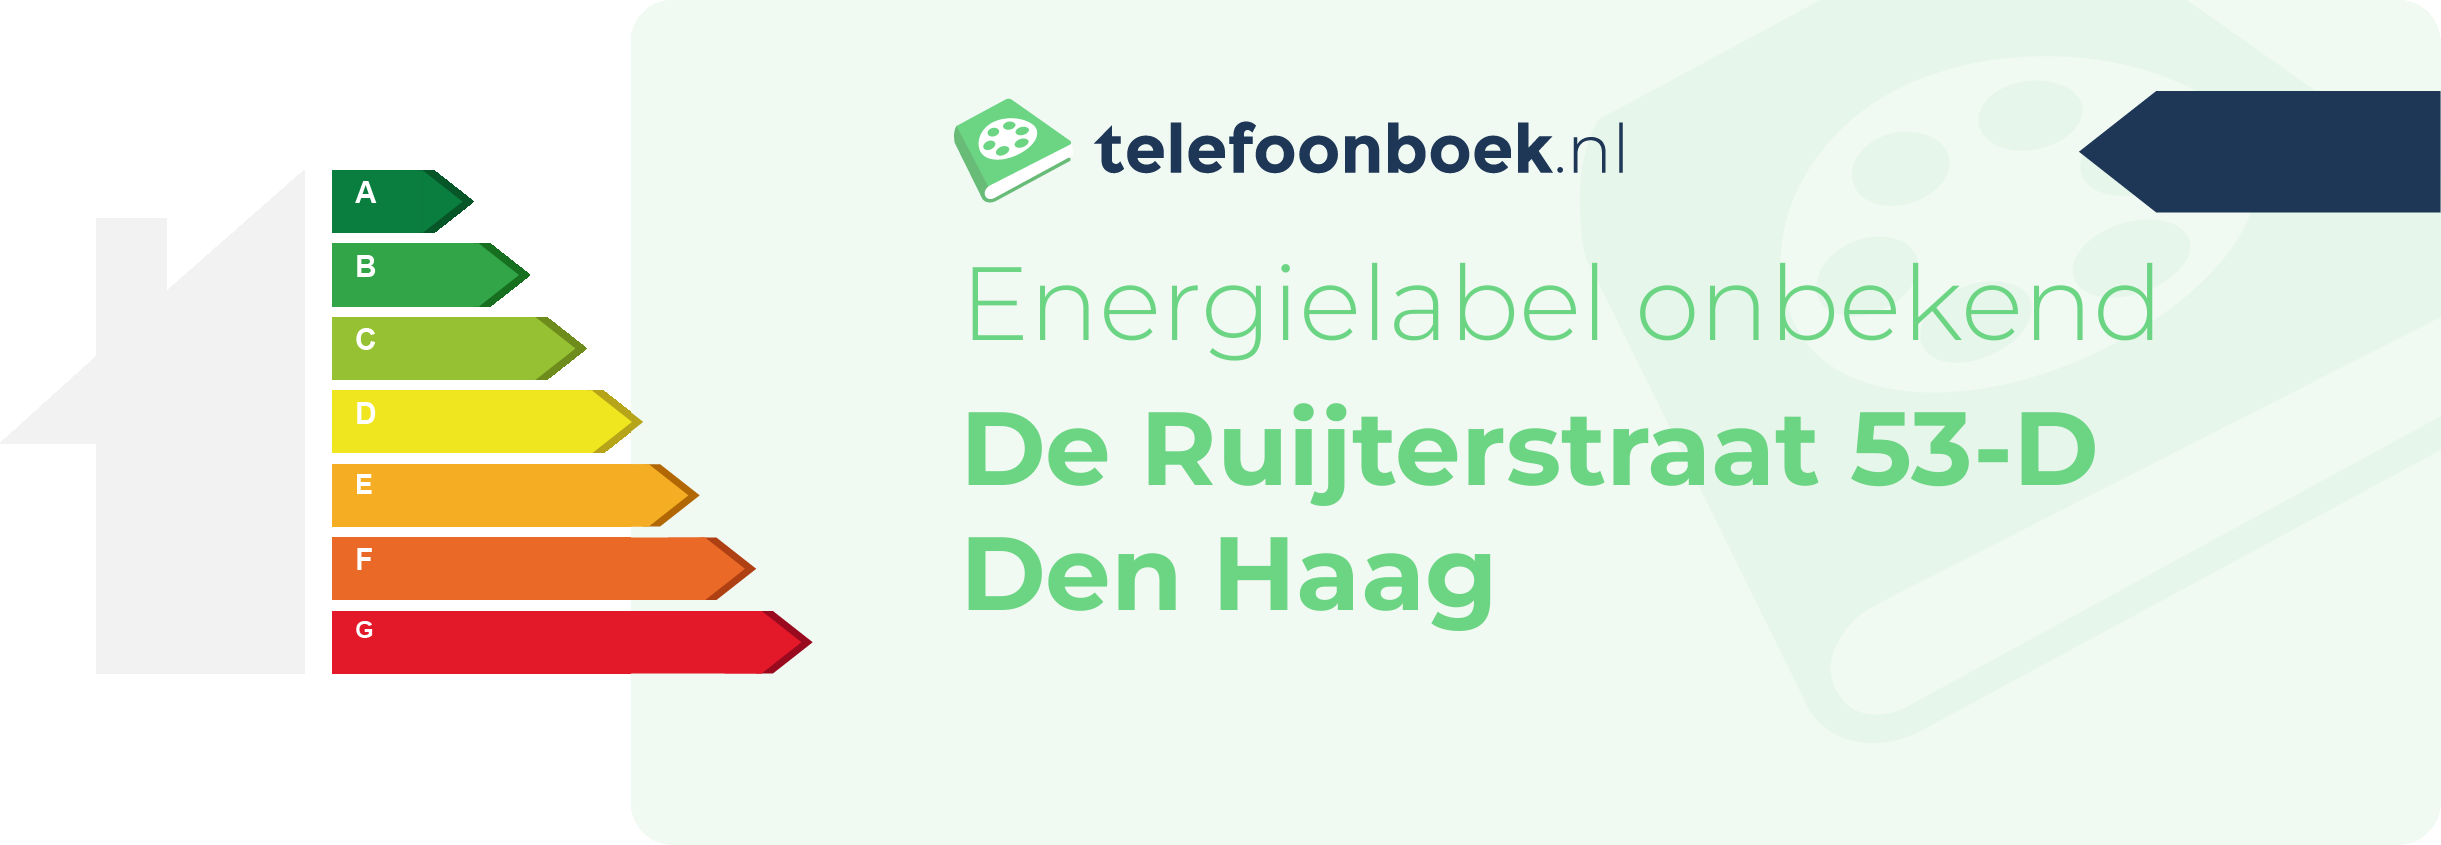 Energielabel De Ruijterstraat 53-D Den Haag